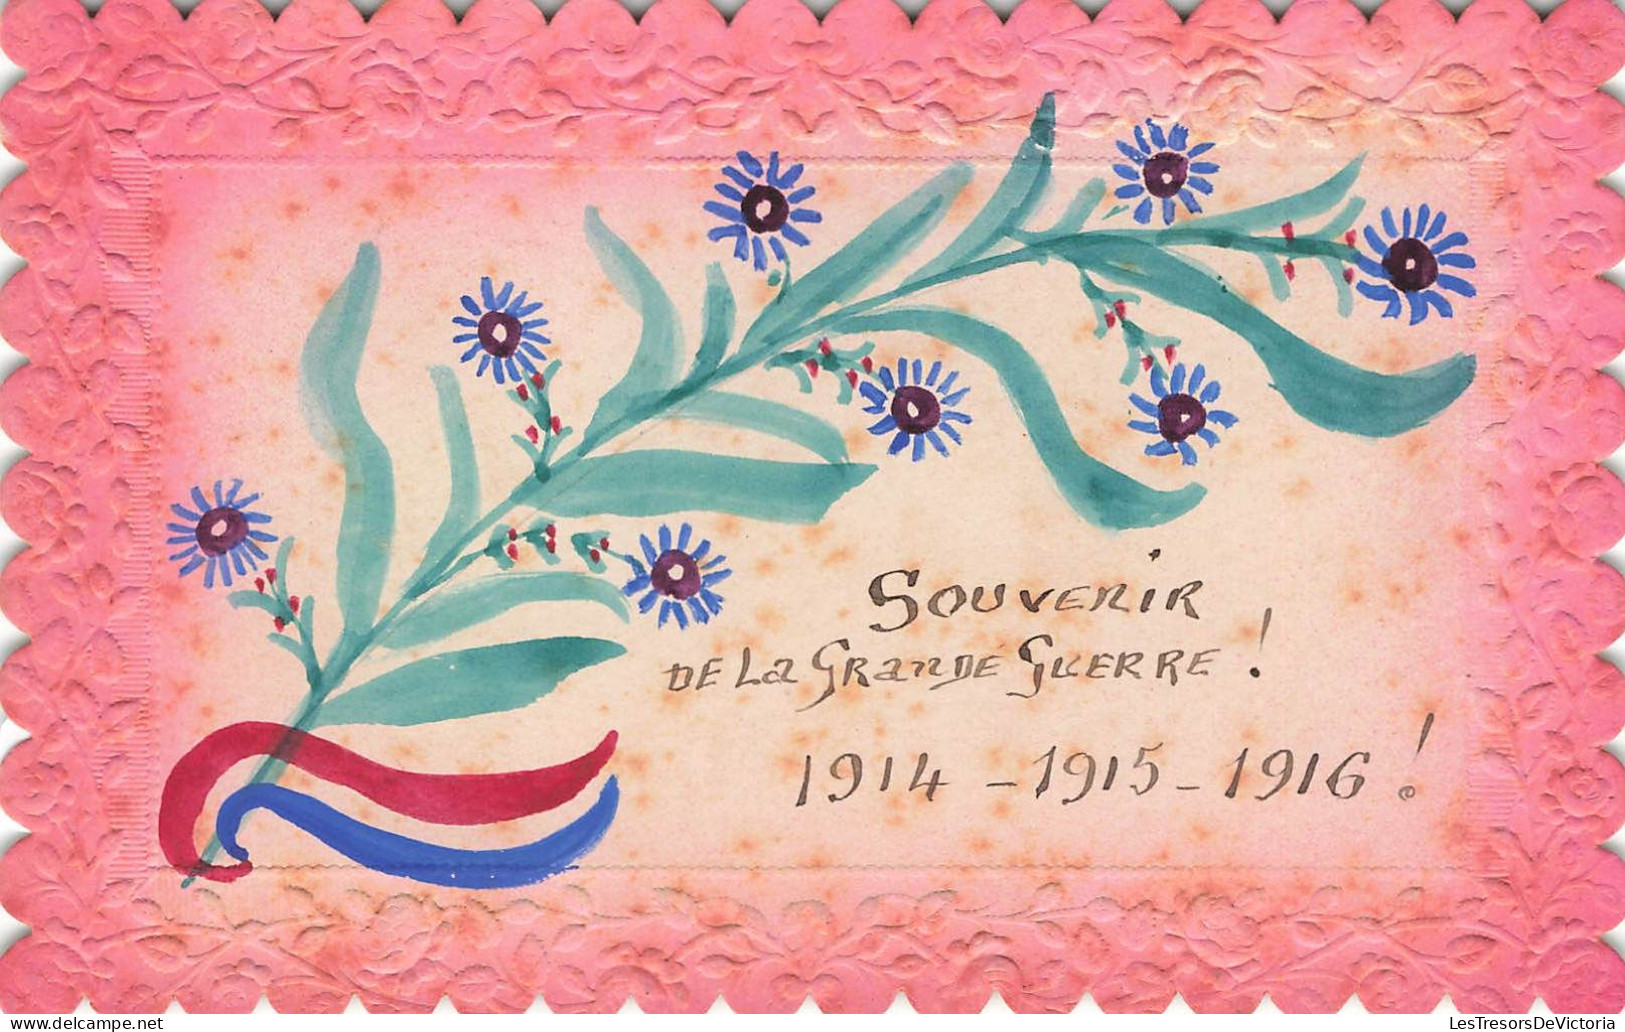 SOUVENIR DE - Souvenir De La Grande Guerre! 1914 - 1915 - 1916 - Colorisé - Carte Postale Ancienne - Gruss Aus.../ Grüsse Aus...